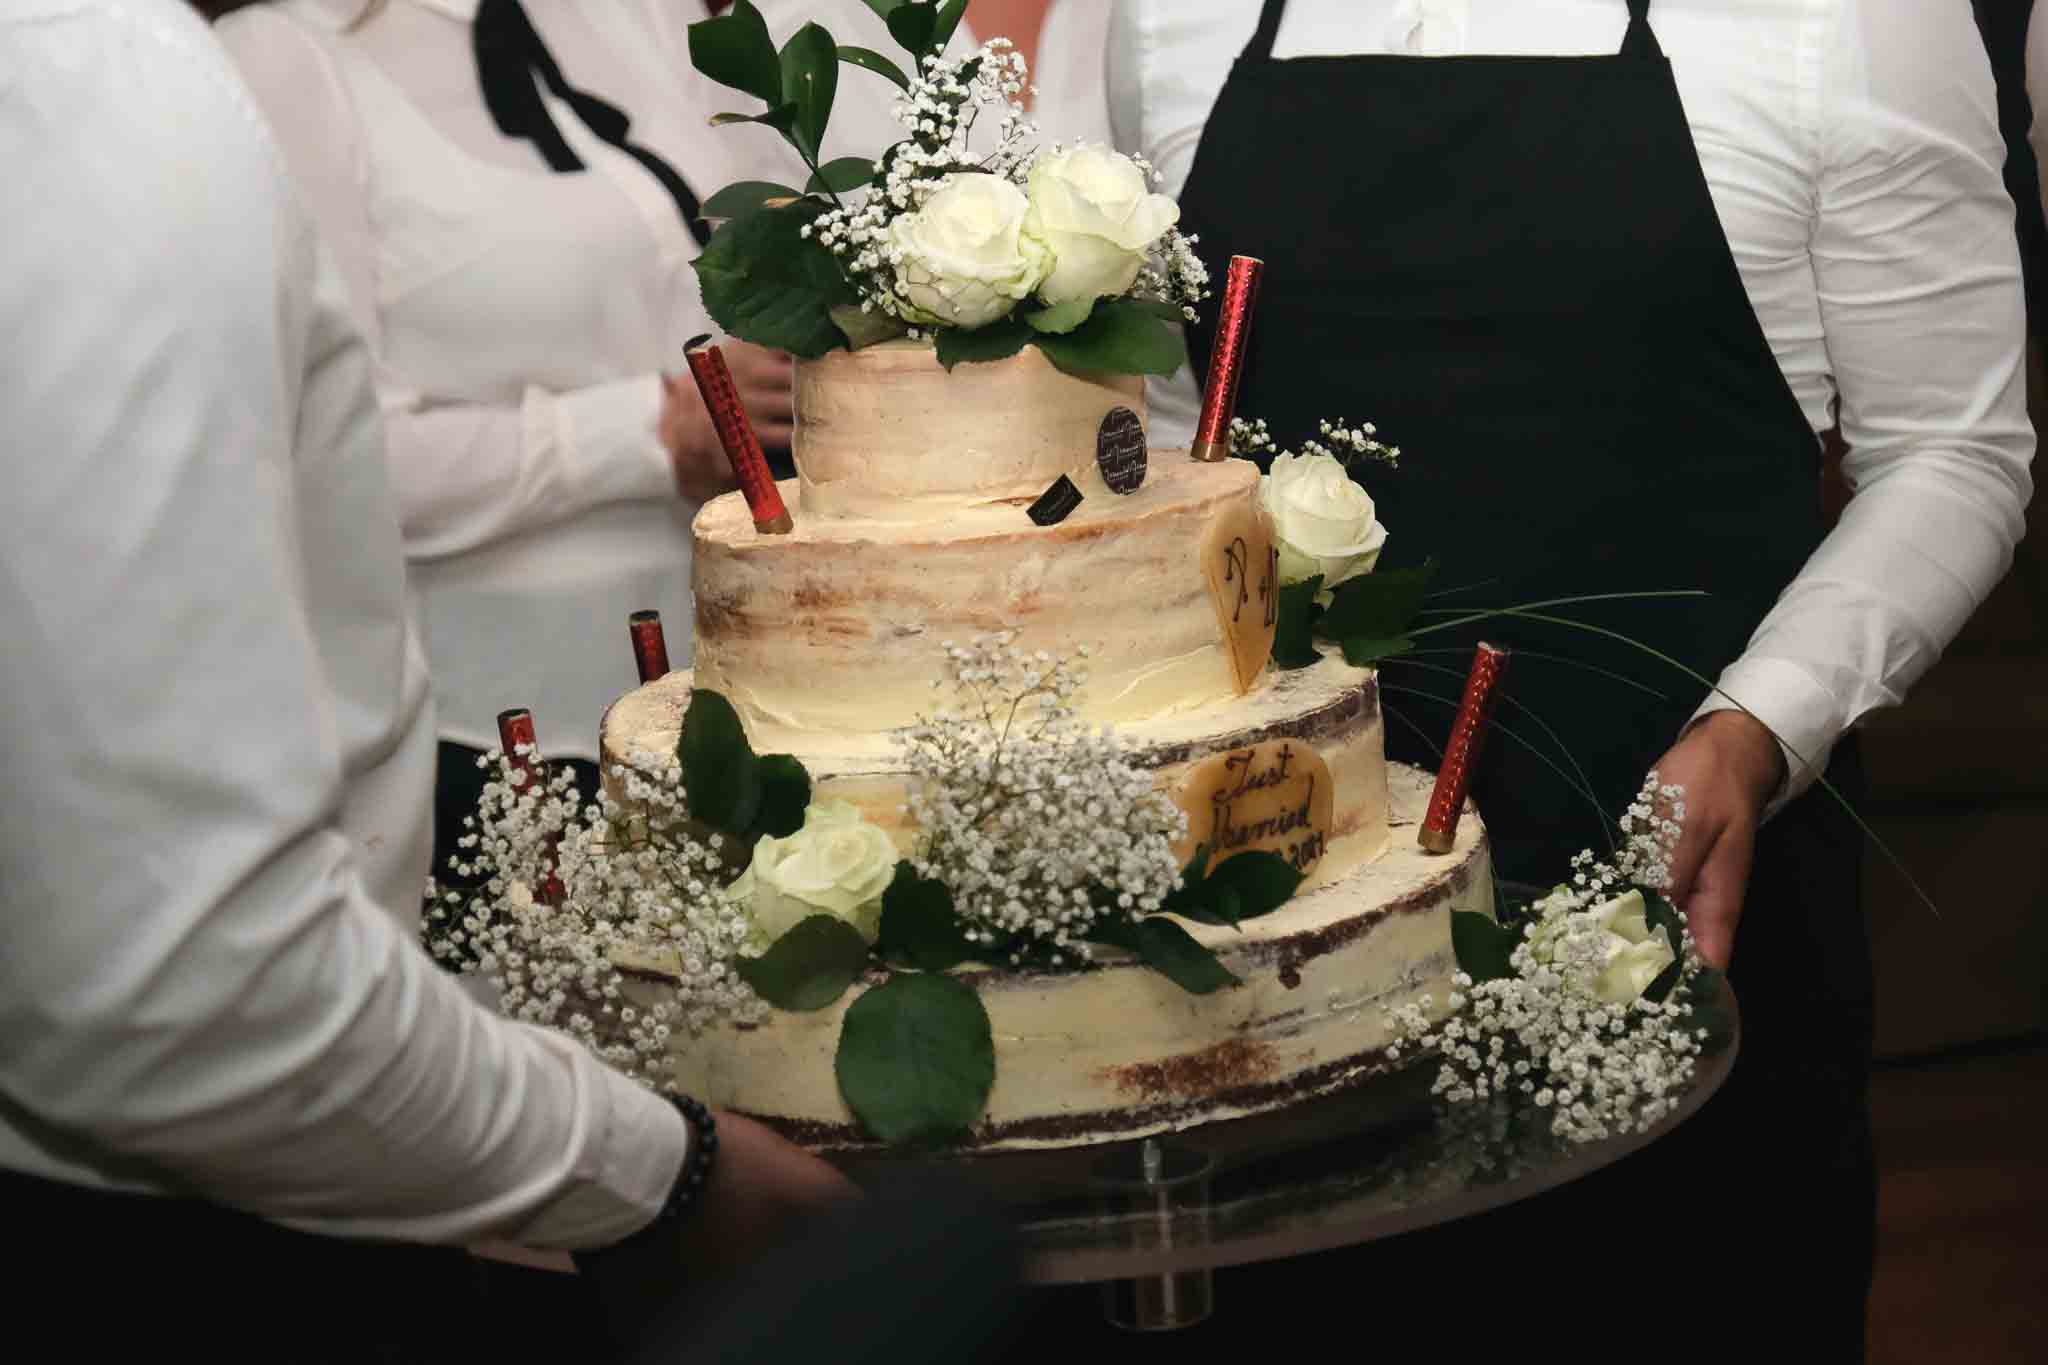 Een mooi gedecoreerde bruilofttaart wordt naar voren gebracht door een paar medewerksters.